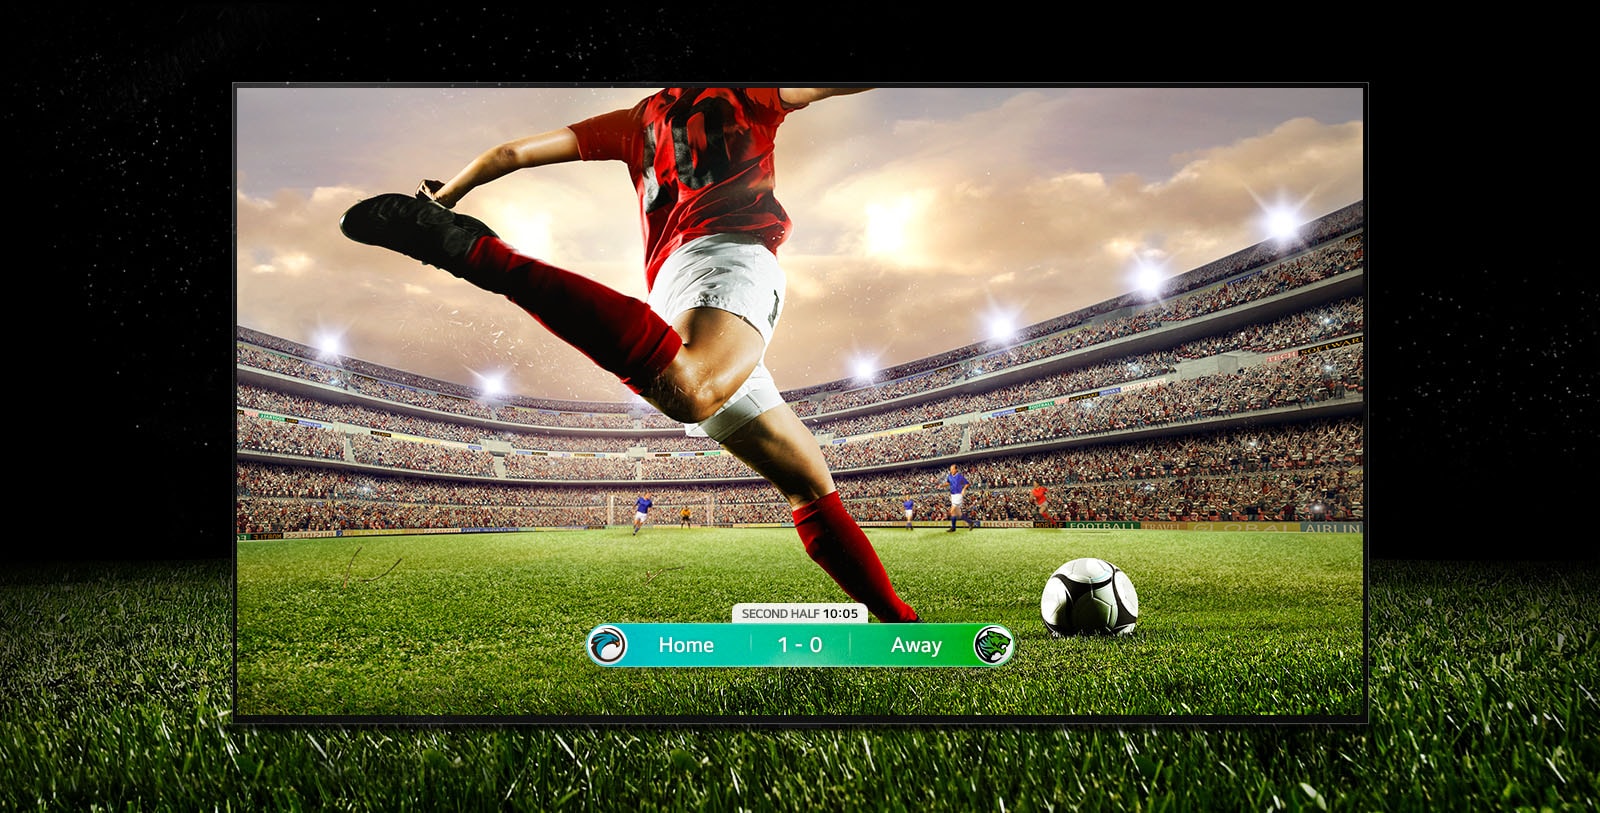 Slika ekrana na kom se prikazuje fudbalska utakmica sa igračem u crvenom prugastom dresu koji se sprema da lansira loptu preko stadiona. Rezultat utakmice je vidljiv u dnu ekrana. Zelena trava sa terena izlazi iz okvira ekrana na crnu pozadinu.